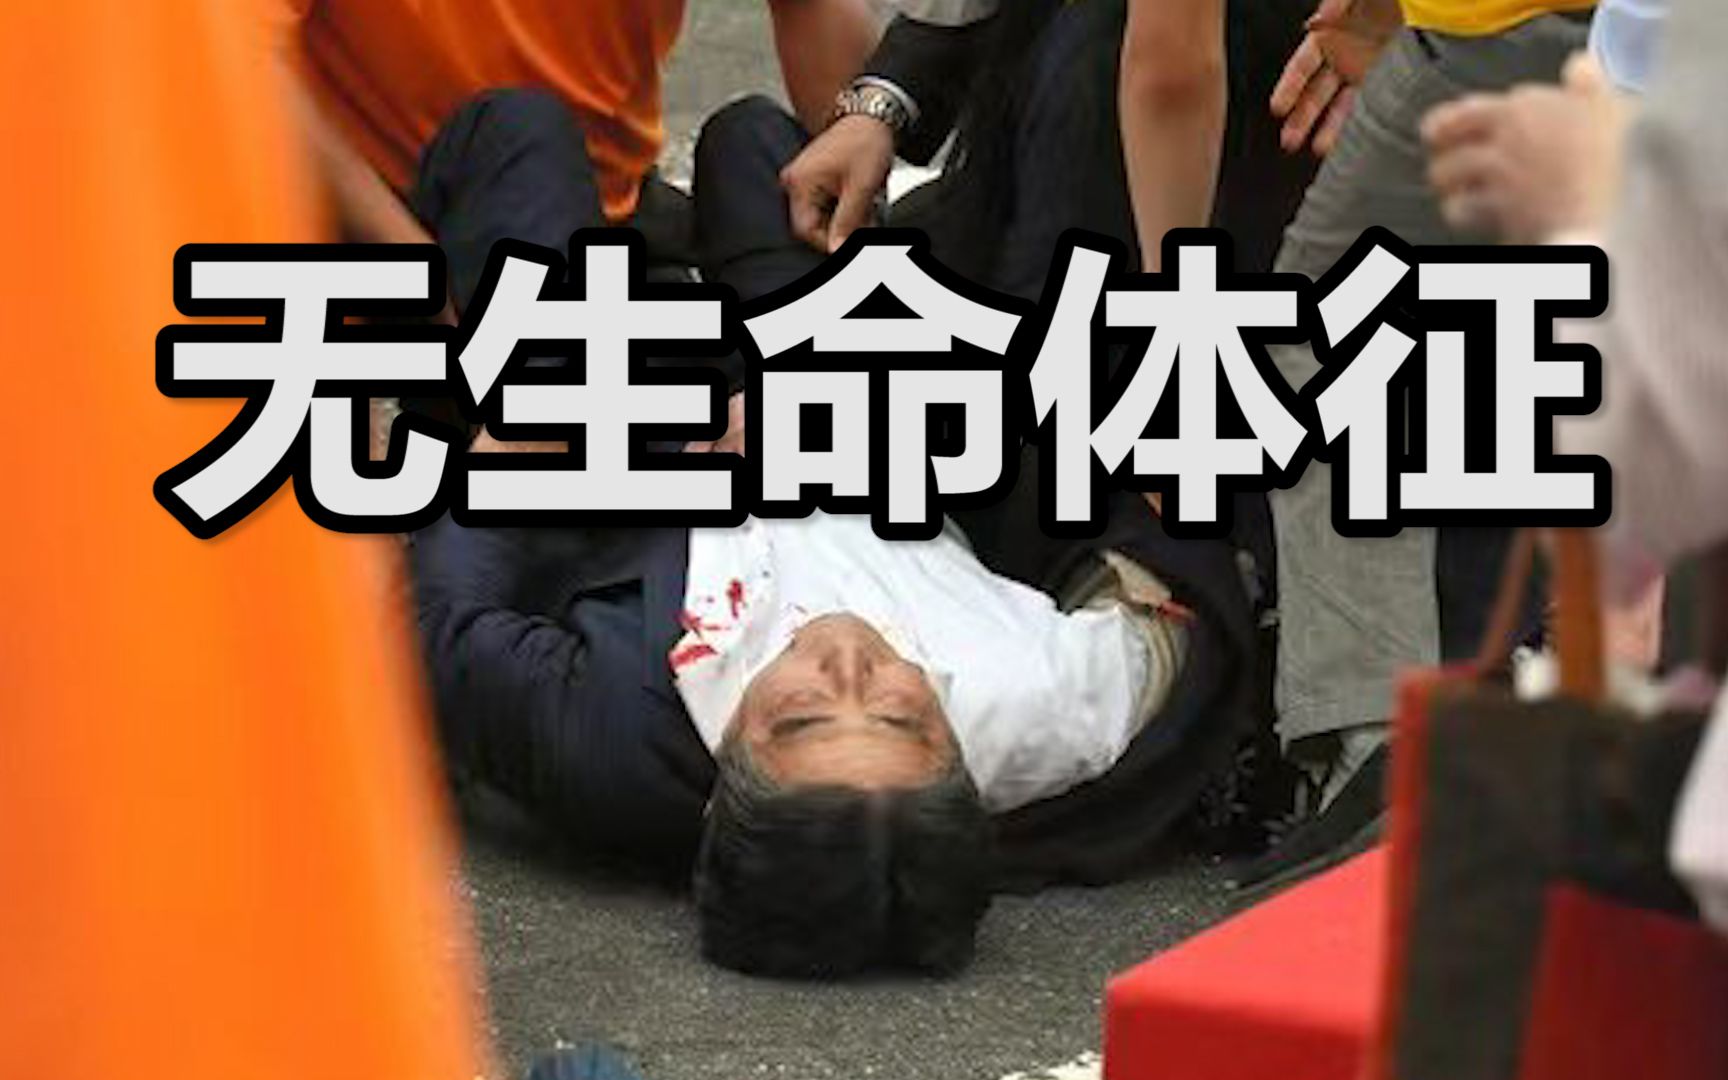 目前日本前首相安倍晋三已经没有生命体征